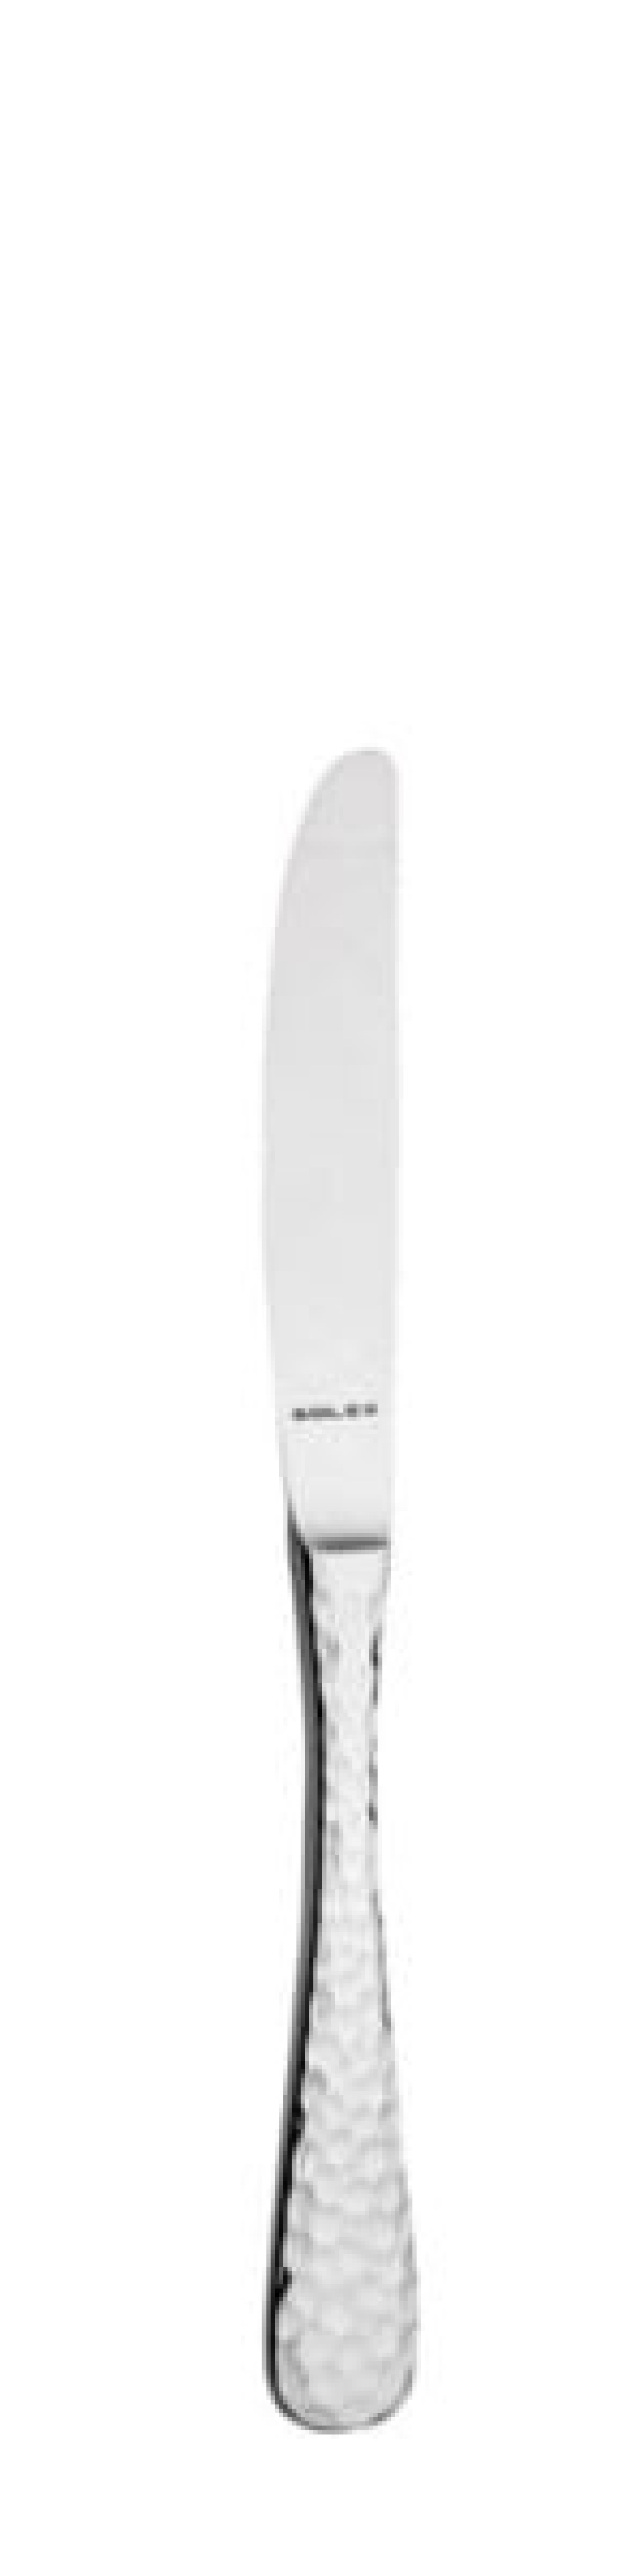 Lena Dessertmesser 211 mm - Solex in der Gruppe Tischgedeck / Besteck / Messer bei The Kitchen Lab (1284-21619)